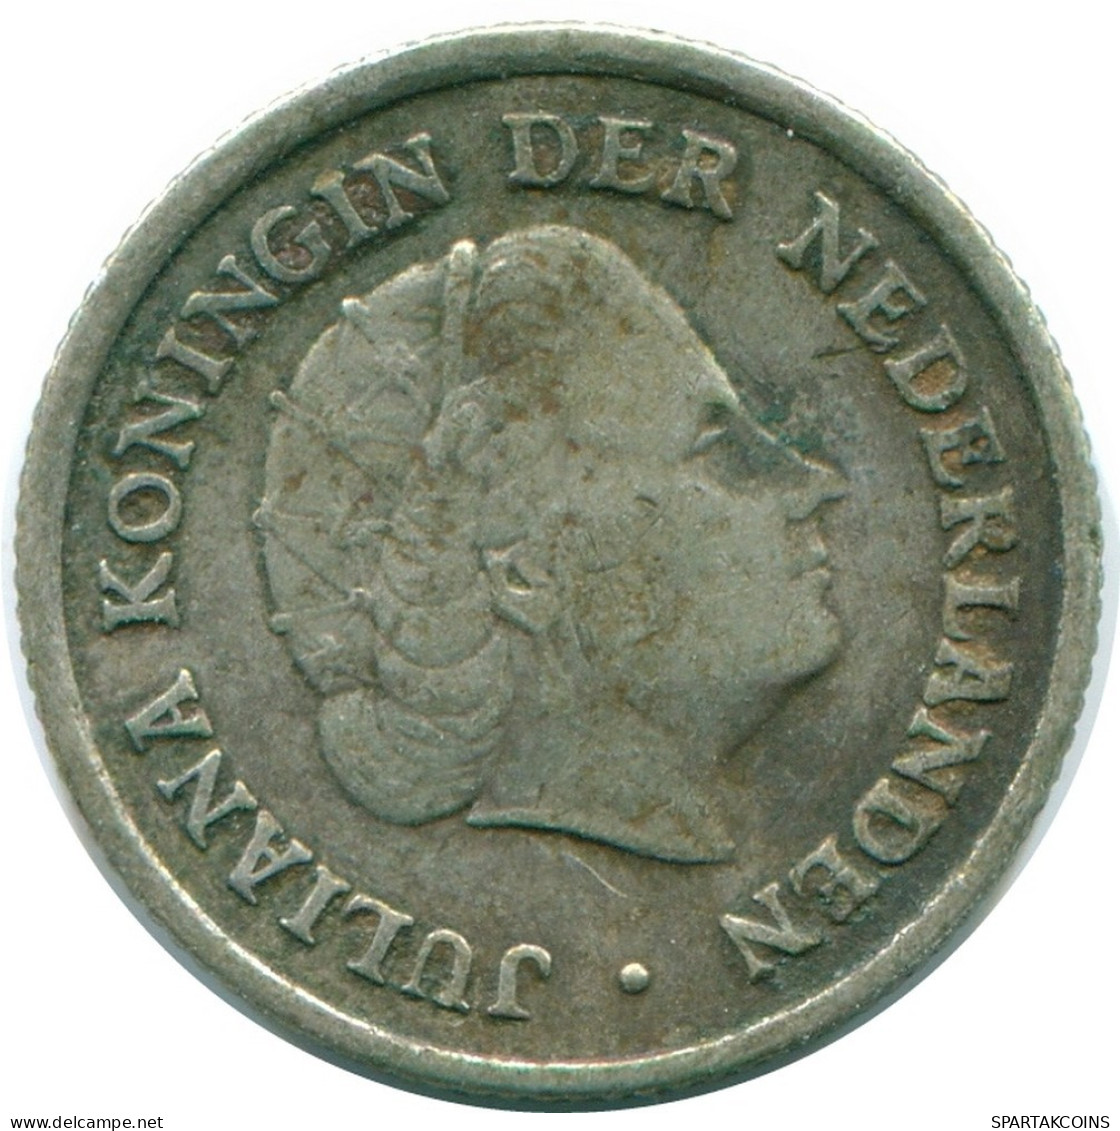 1/10 GULDEN 1957 NIEDERLÄNDISCHE ANTILLEN SILBER Koloniale Münze #NL12164.3.D.A - Nederlandse Antillen